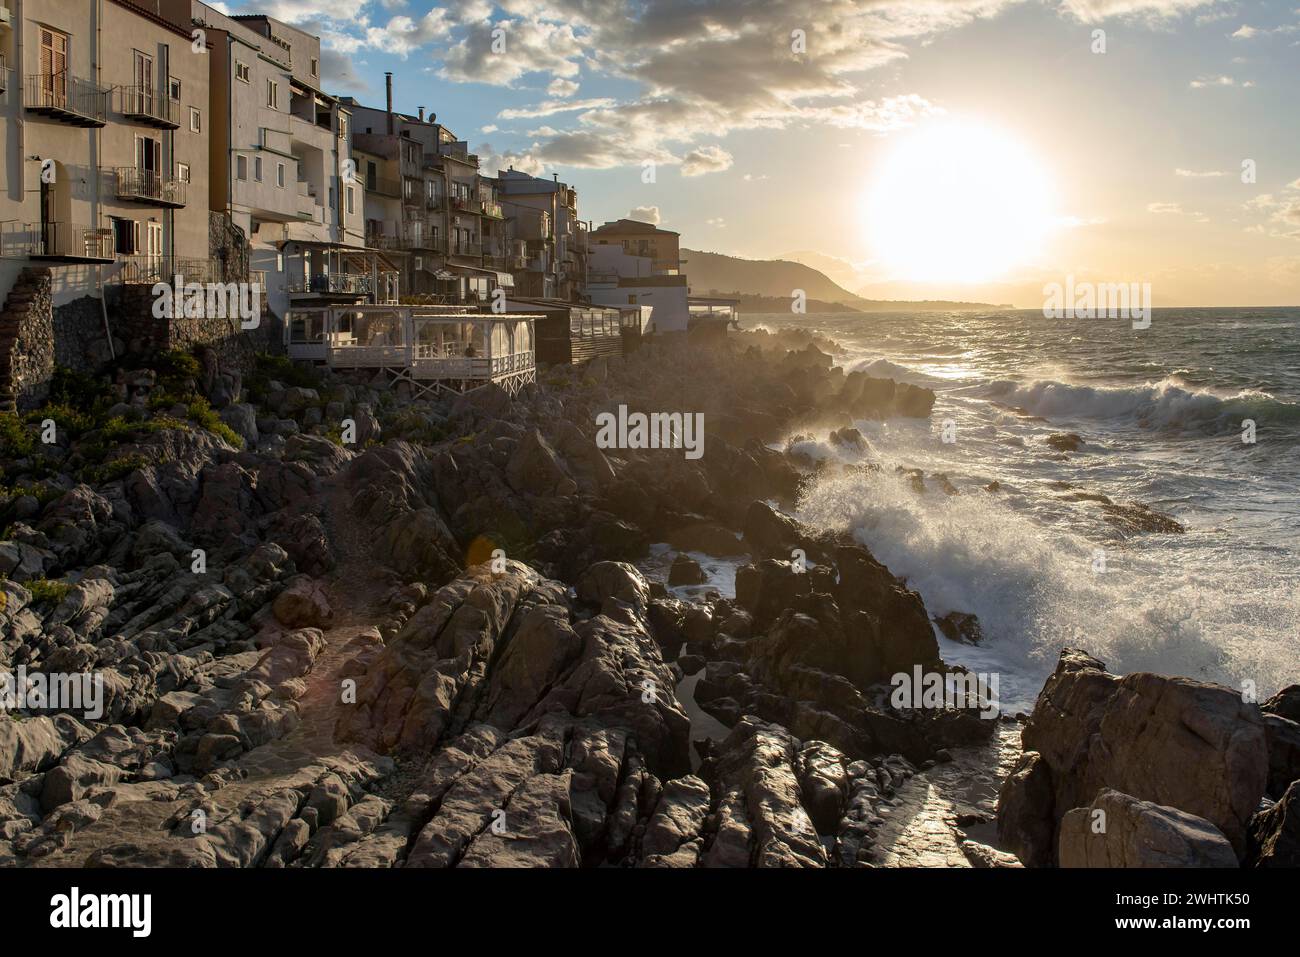 L'eau de mer s'écrase contre les falaises de la côte accidentée dans la ville de Cefalu, Sicile, Italie Banque D'Images